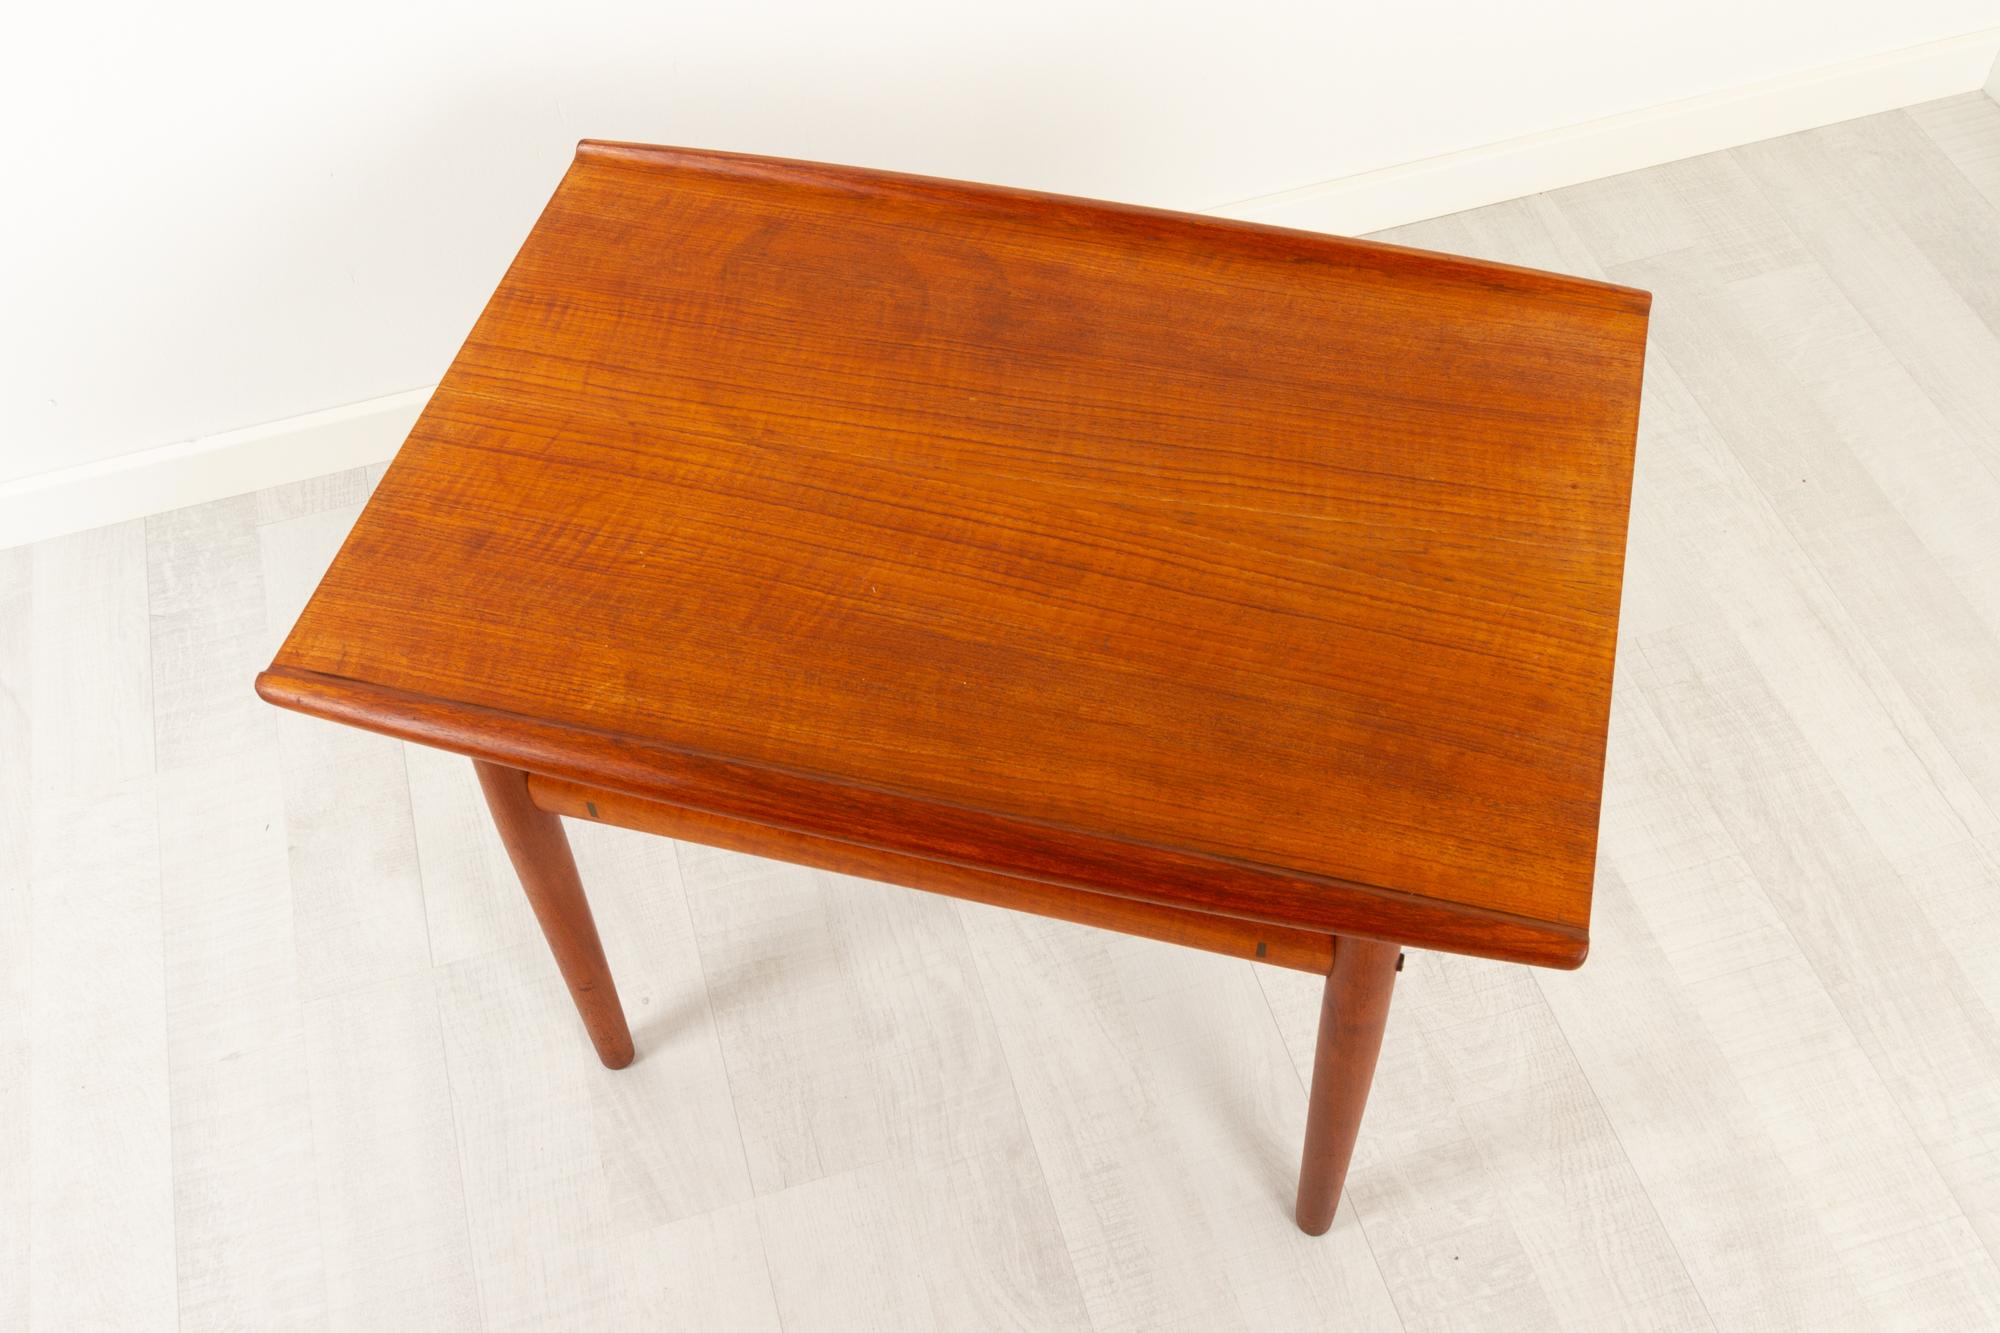 Vintage Danish Teak Side Table by Grete Jalk for Glostrup Møbelfabrik, 1960s For Sale 4